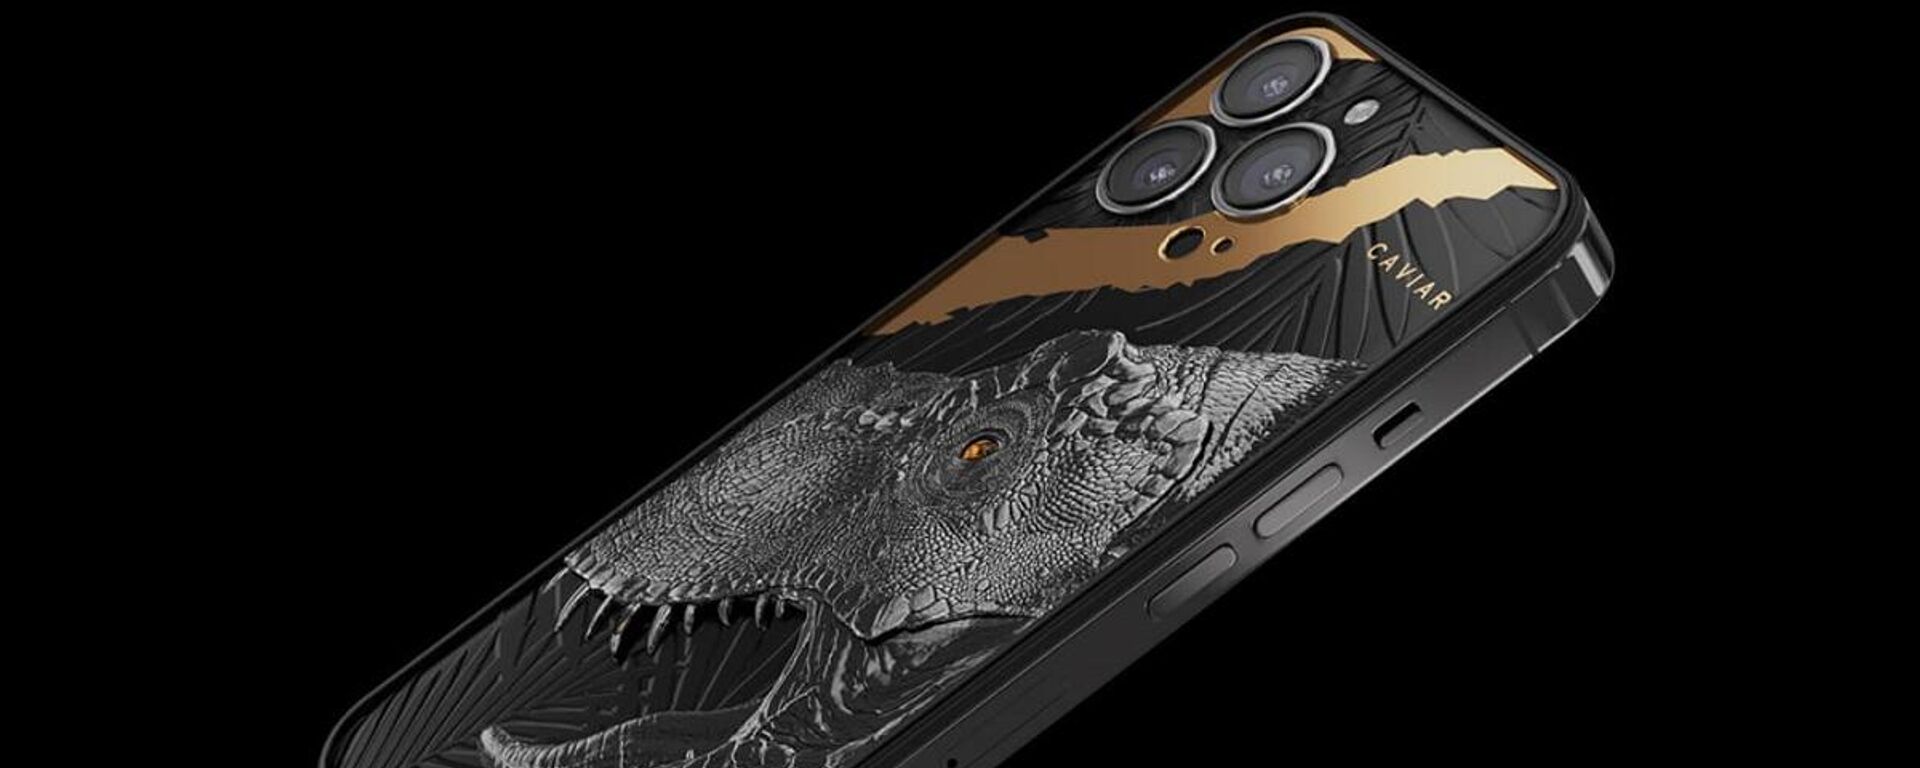 Rus lüks aksesuar üreticisi Caviar, üzerinde 80 milyon yıllık gerçek bir T-Rex dinozor dişinin bulunduğu, fiyatı 9 bin 150 dolar olan bir iPhone 13 Pro Max üretti. - Sputnik Türkiye, 1920, 15.11.2021